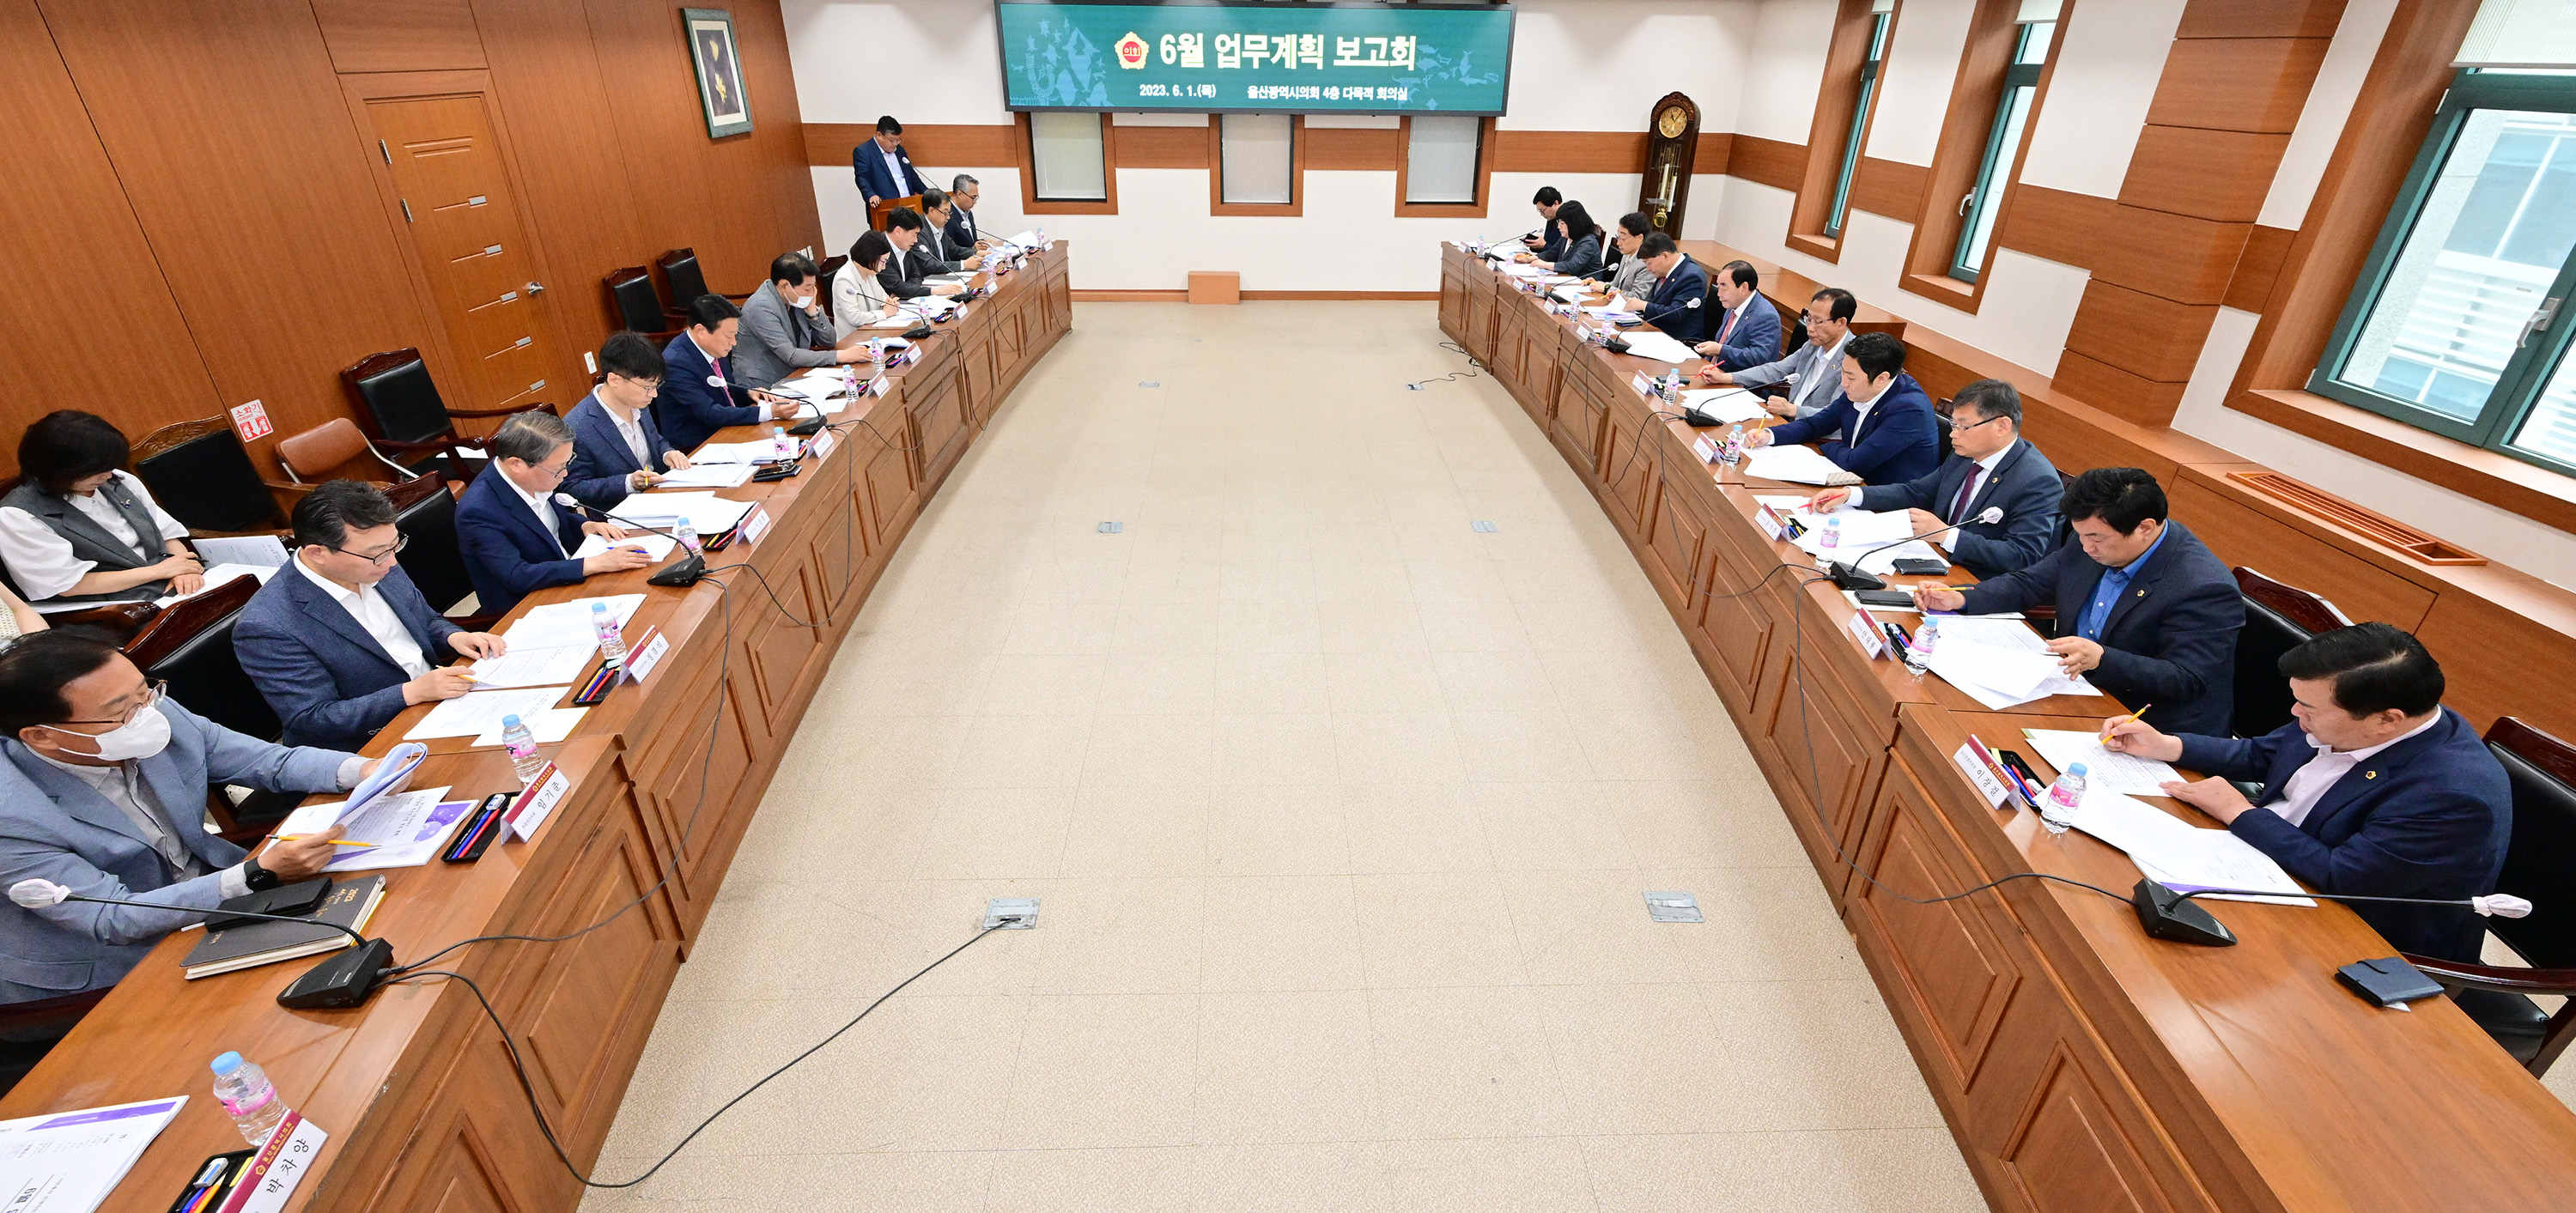 울산광역시의회, 6월 월간업무계획 보고회4